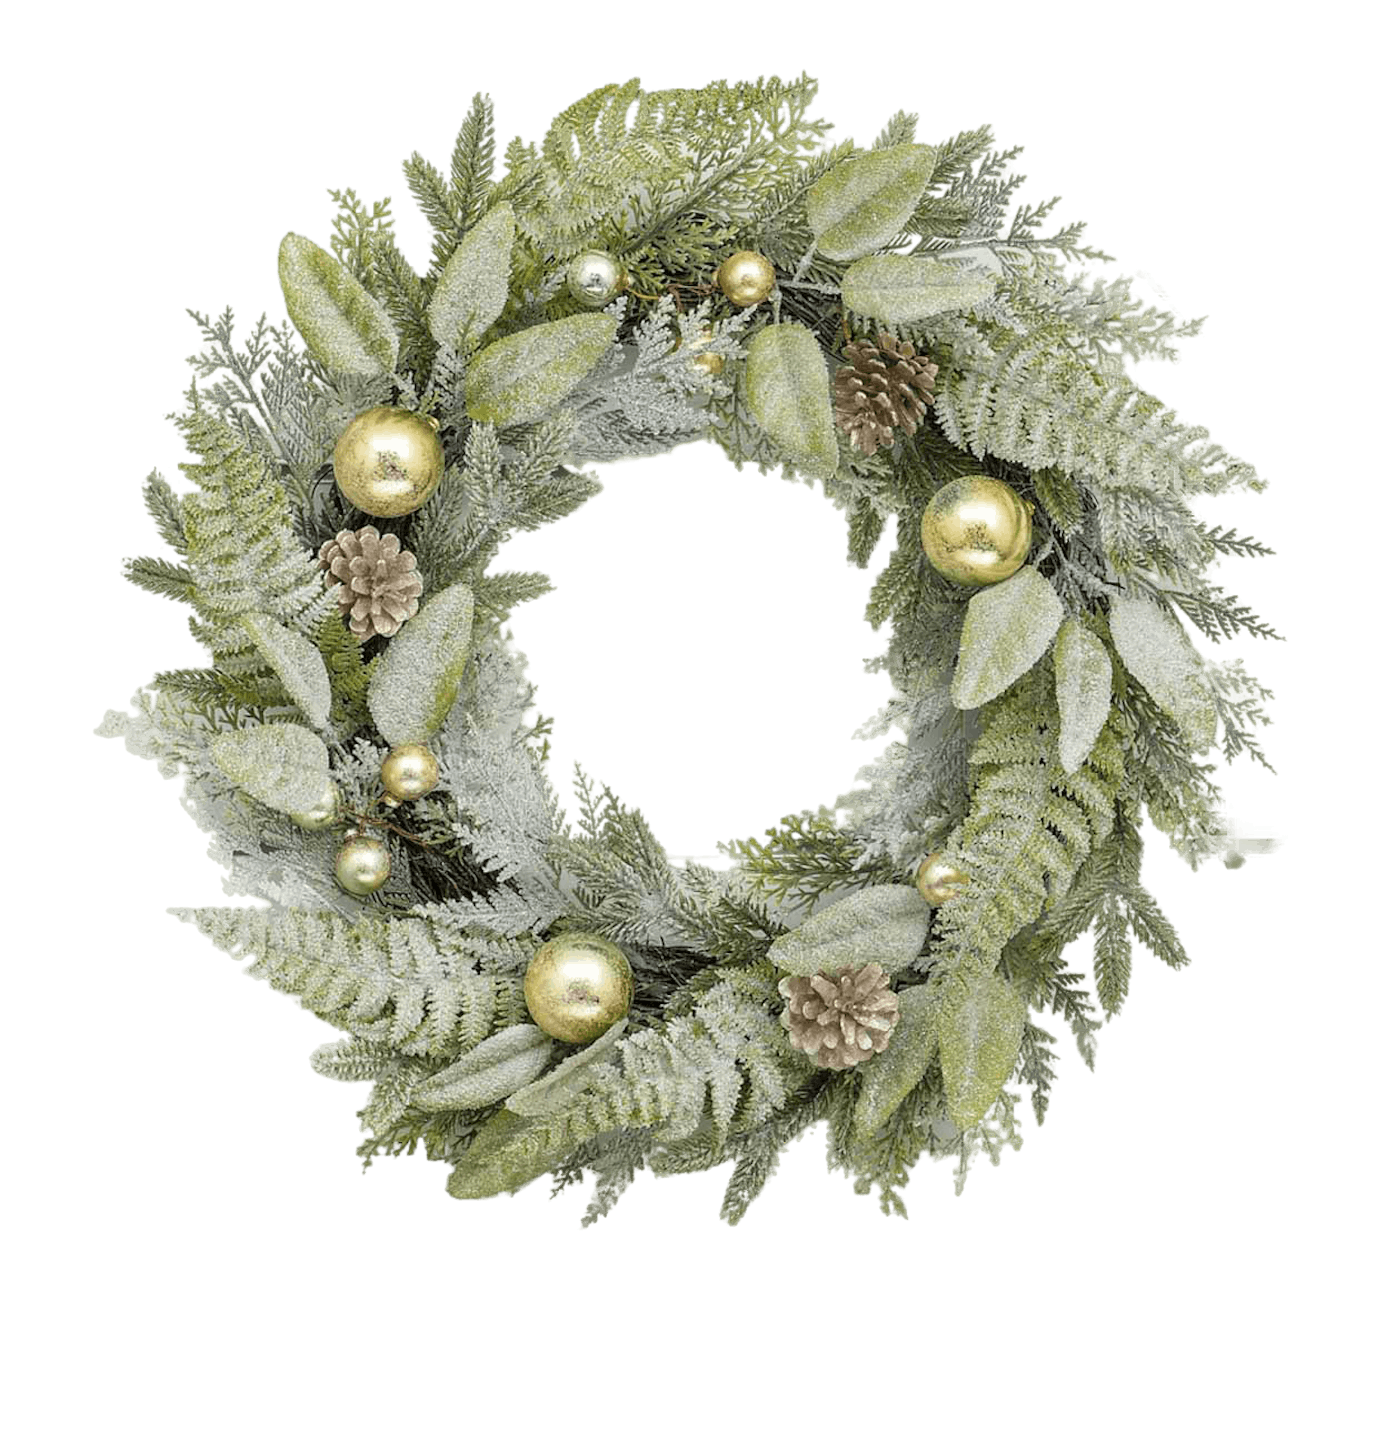 Nordic Christmas wreath